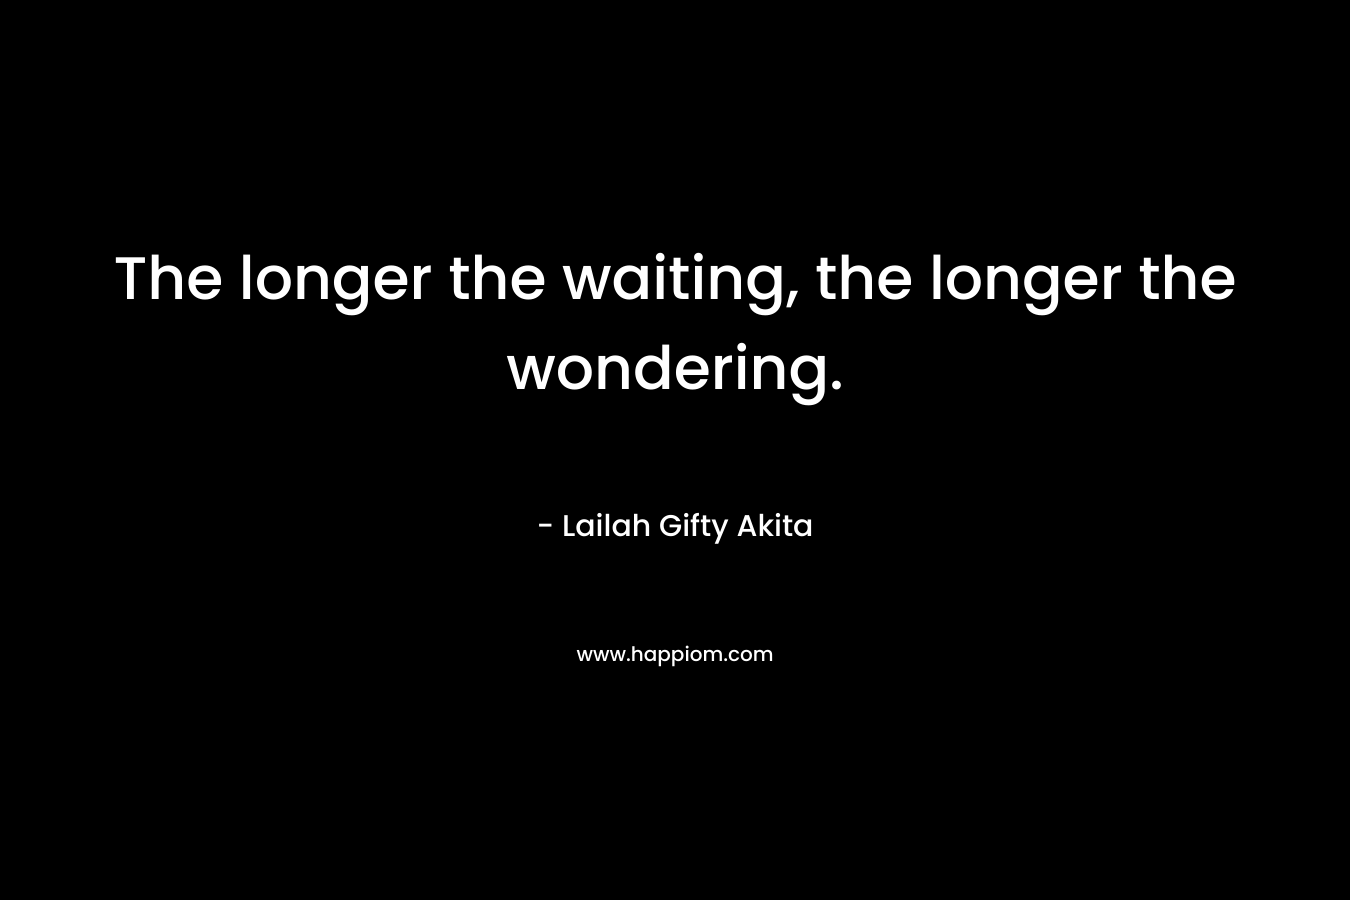 The longer the waiting, the longer the wondering.